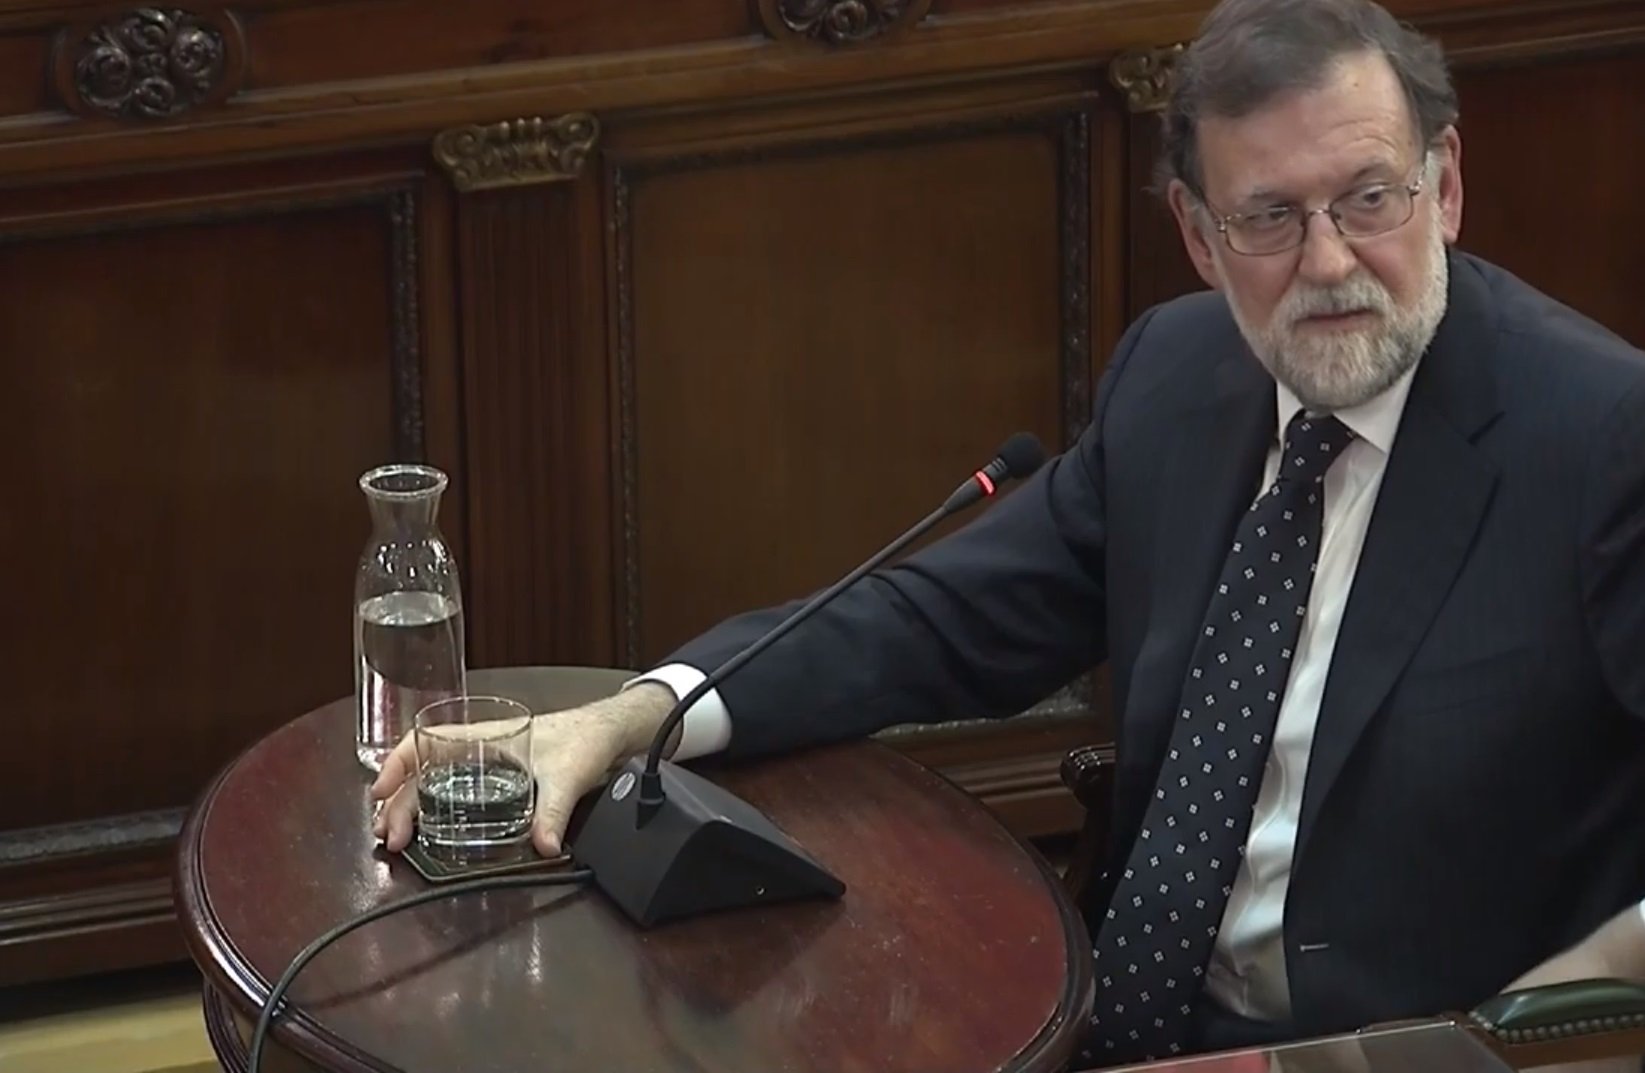 VÍDEO | La declaració completa de Mariano Rajoy